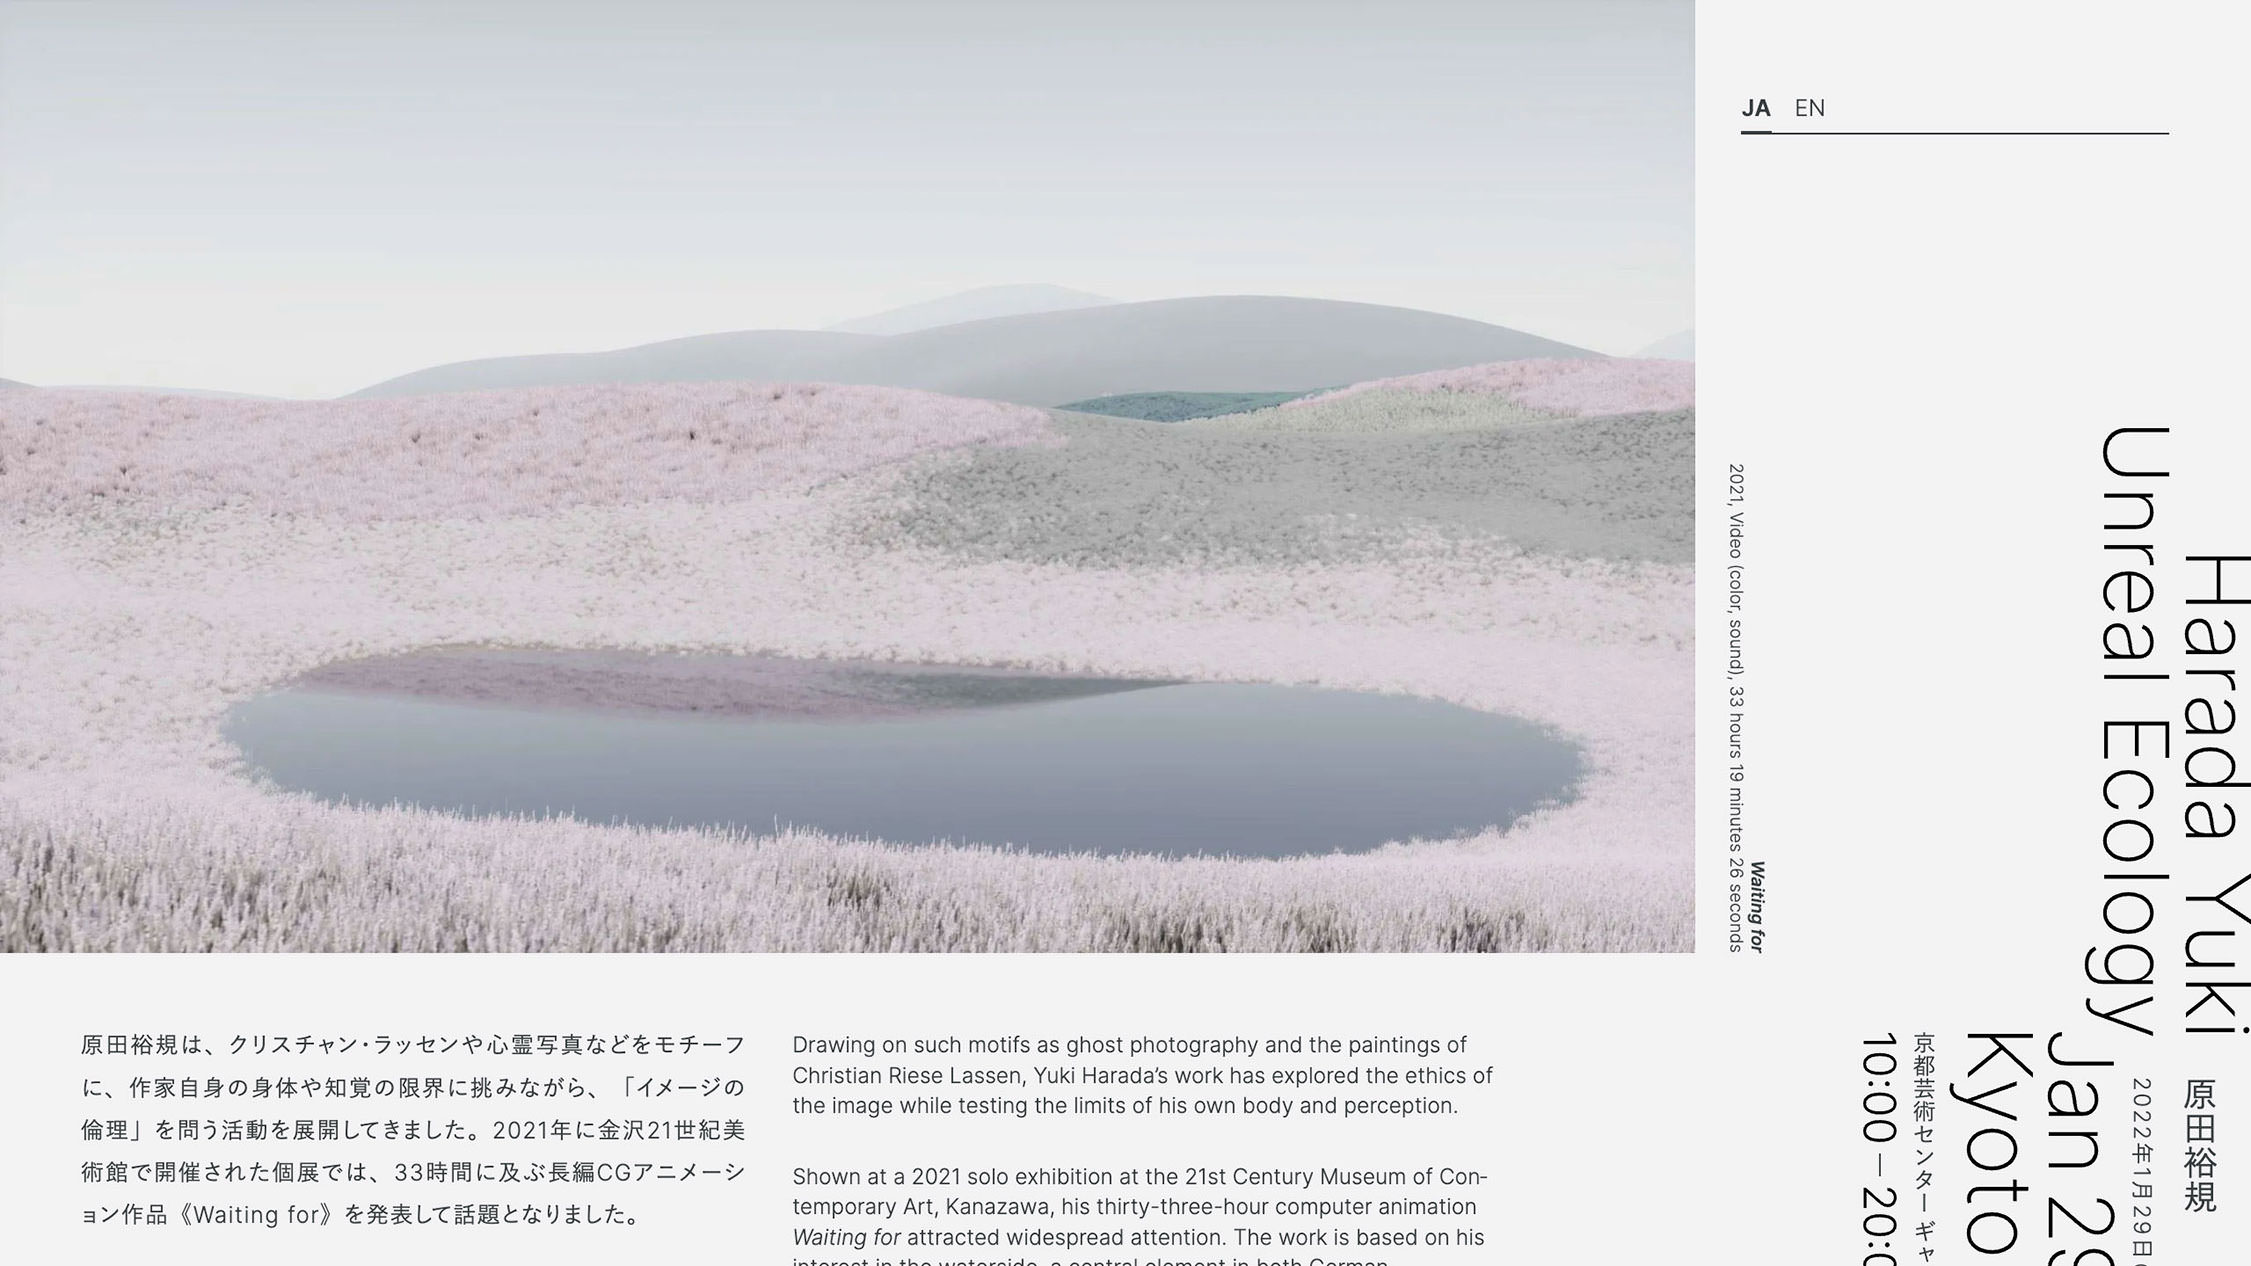 原田裕規「Unreal Ecology」 Harada Yuki “Unreal Ecology” - 京都芸術センター / Kyoto Art Center